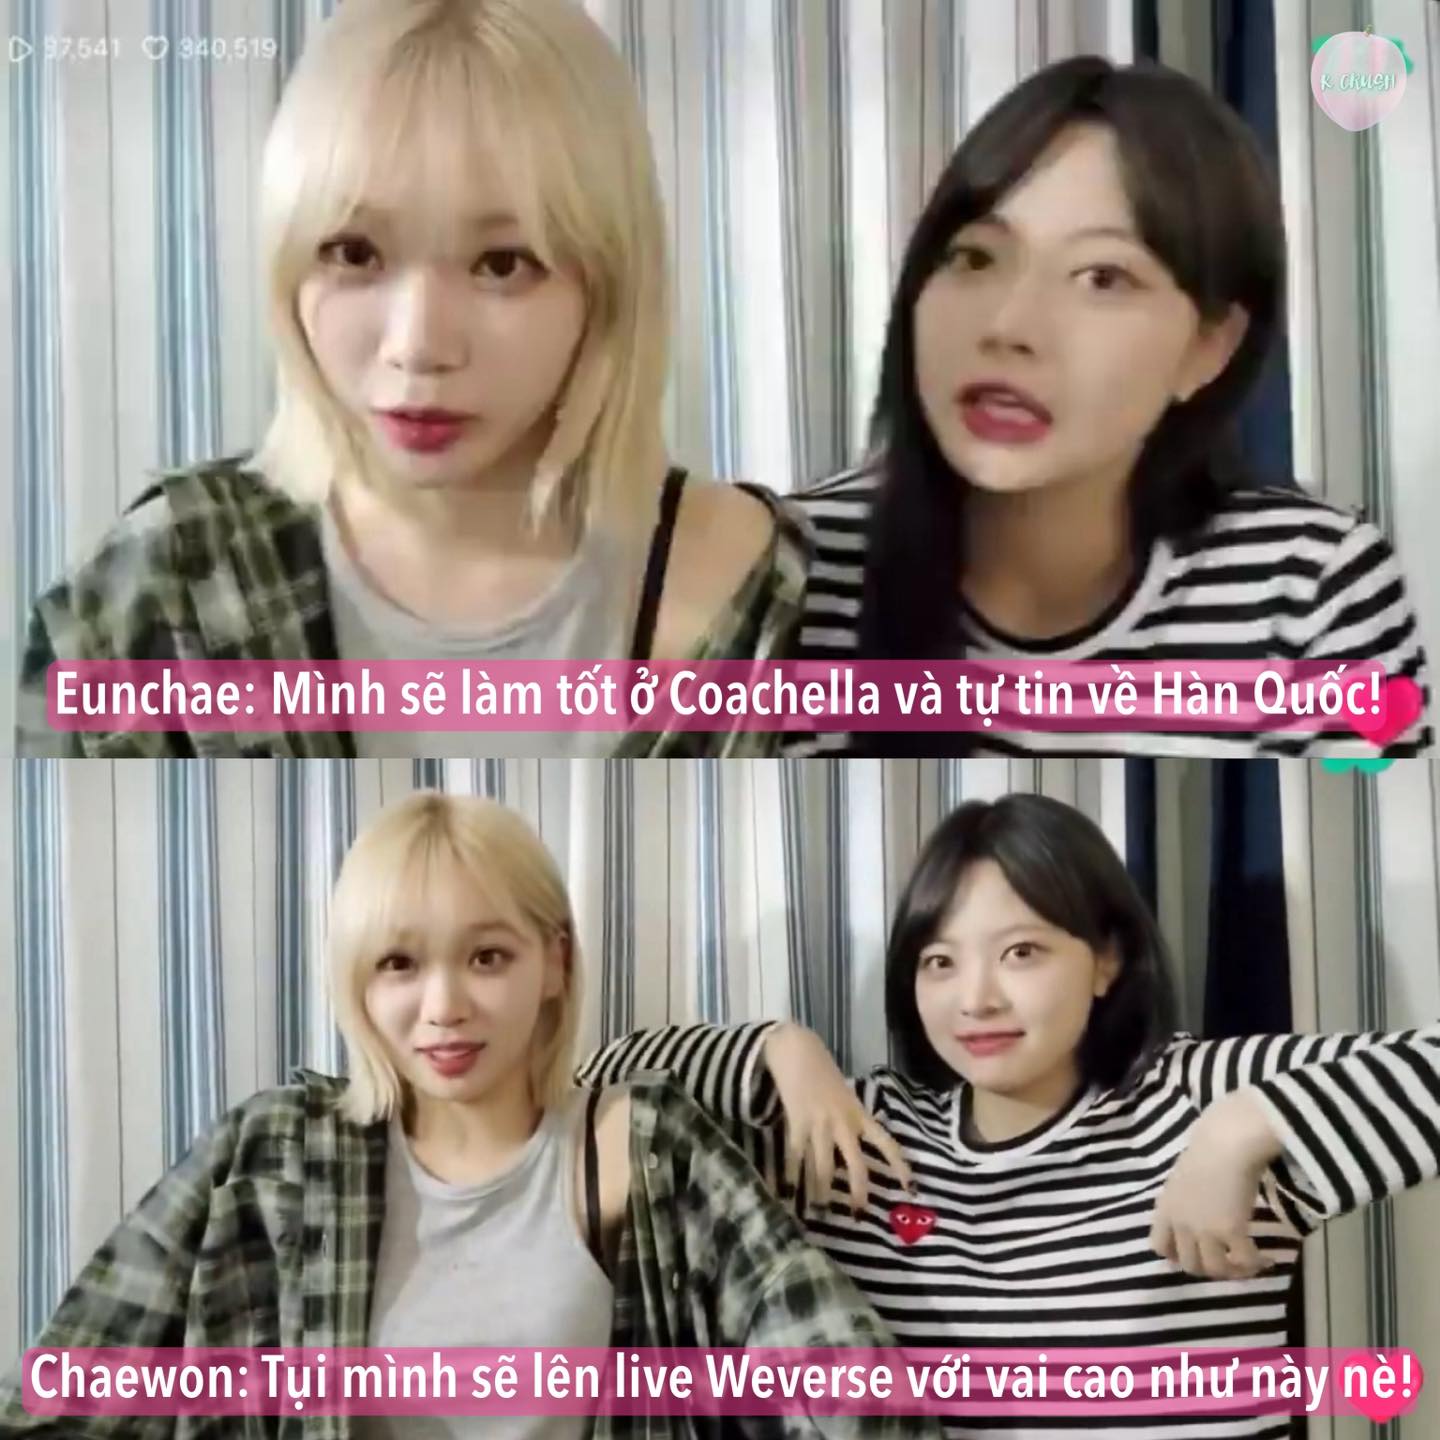 Bởi trước đó, hai thành viên của nhóm là Chaewon và Eunchae đã tự tin, mạnh miệng lên livestream tuyên bố với khán giả nhóm sẽ tự tin trở về Hàn Quốc sau màn biểu diễn tại Coachella.